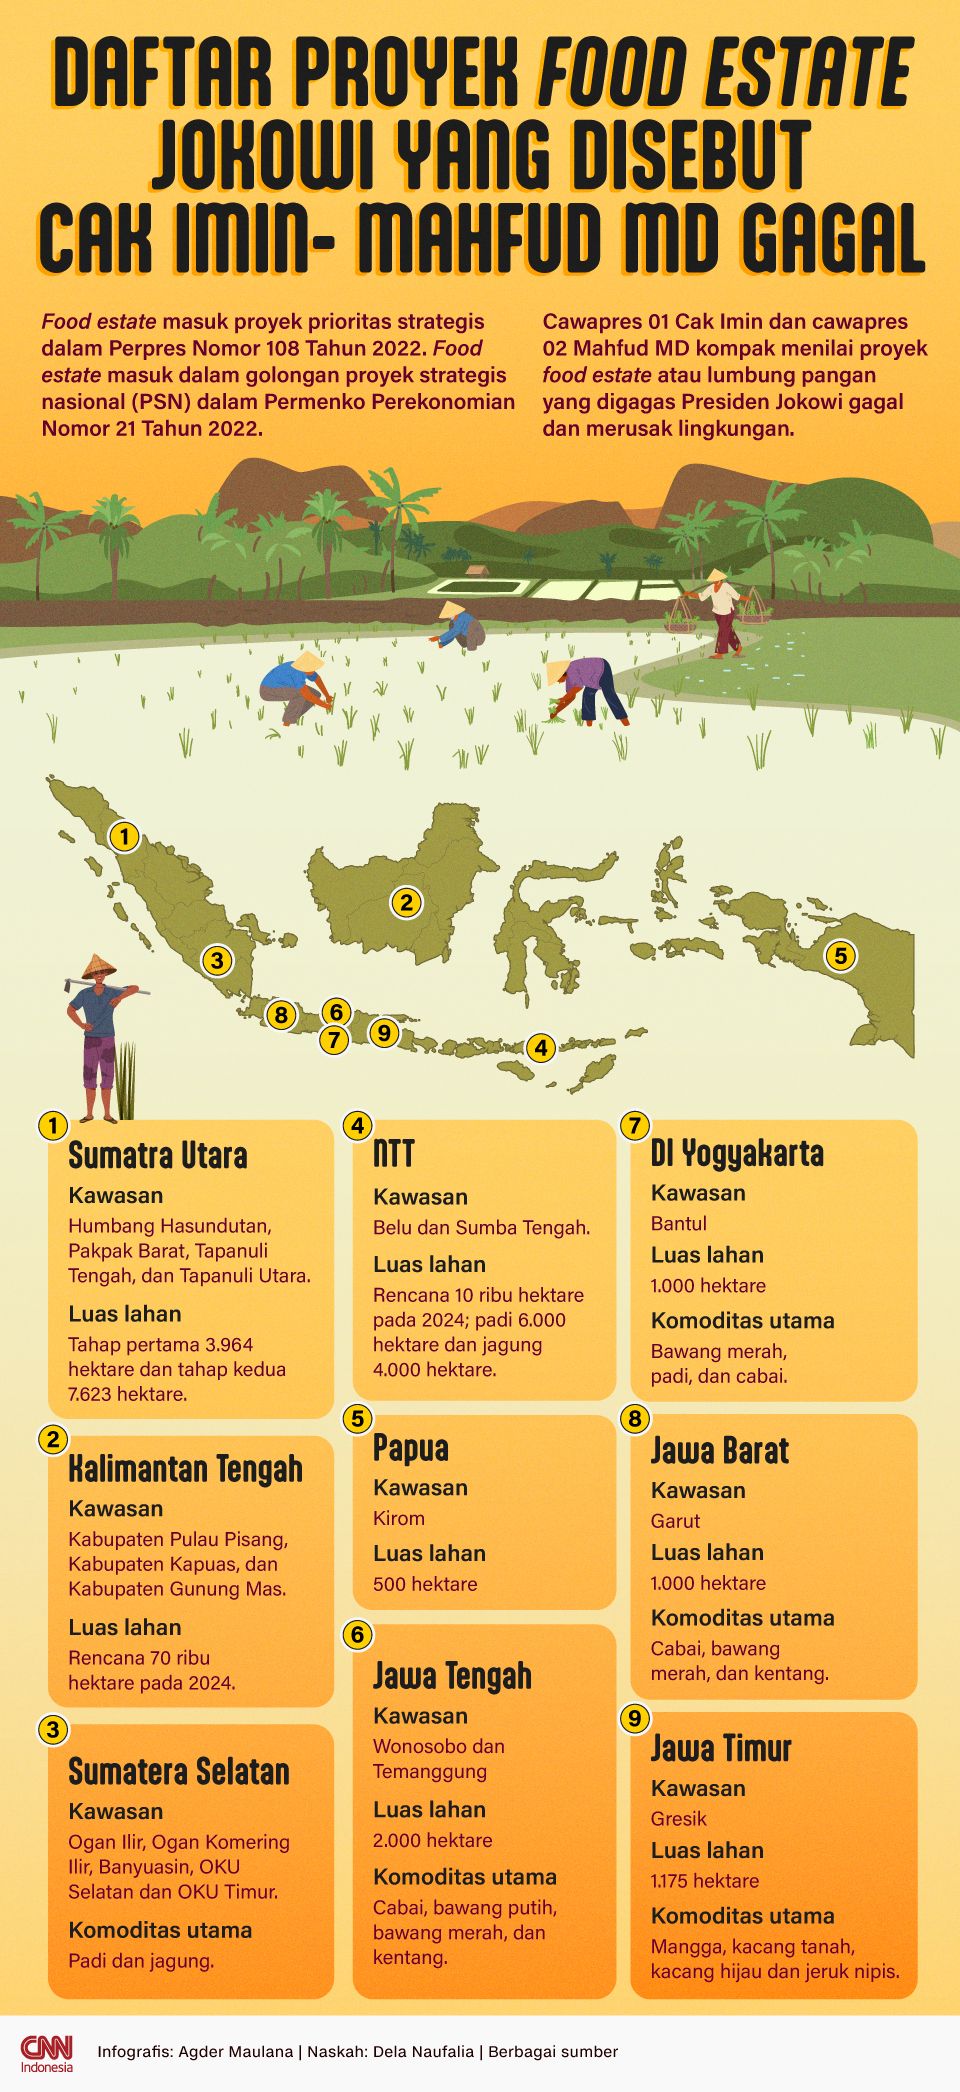 INFOGRAFIS: Daftar Proyek Food Estate Jokowi yang Disebut Cak Imin-Mahfud MD Gagal